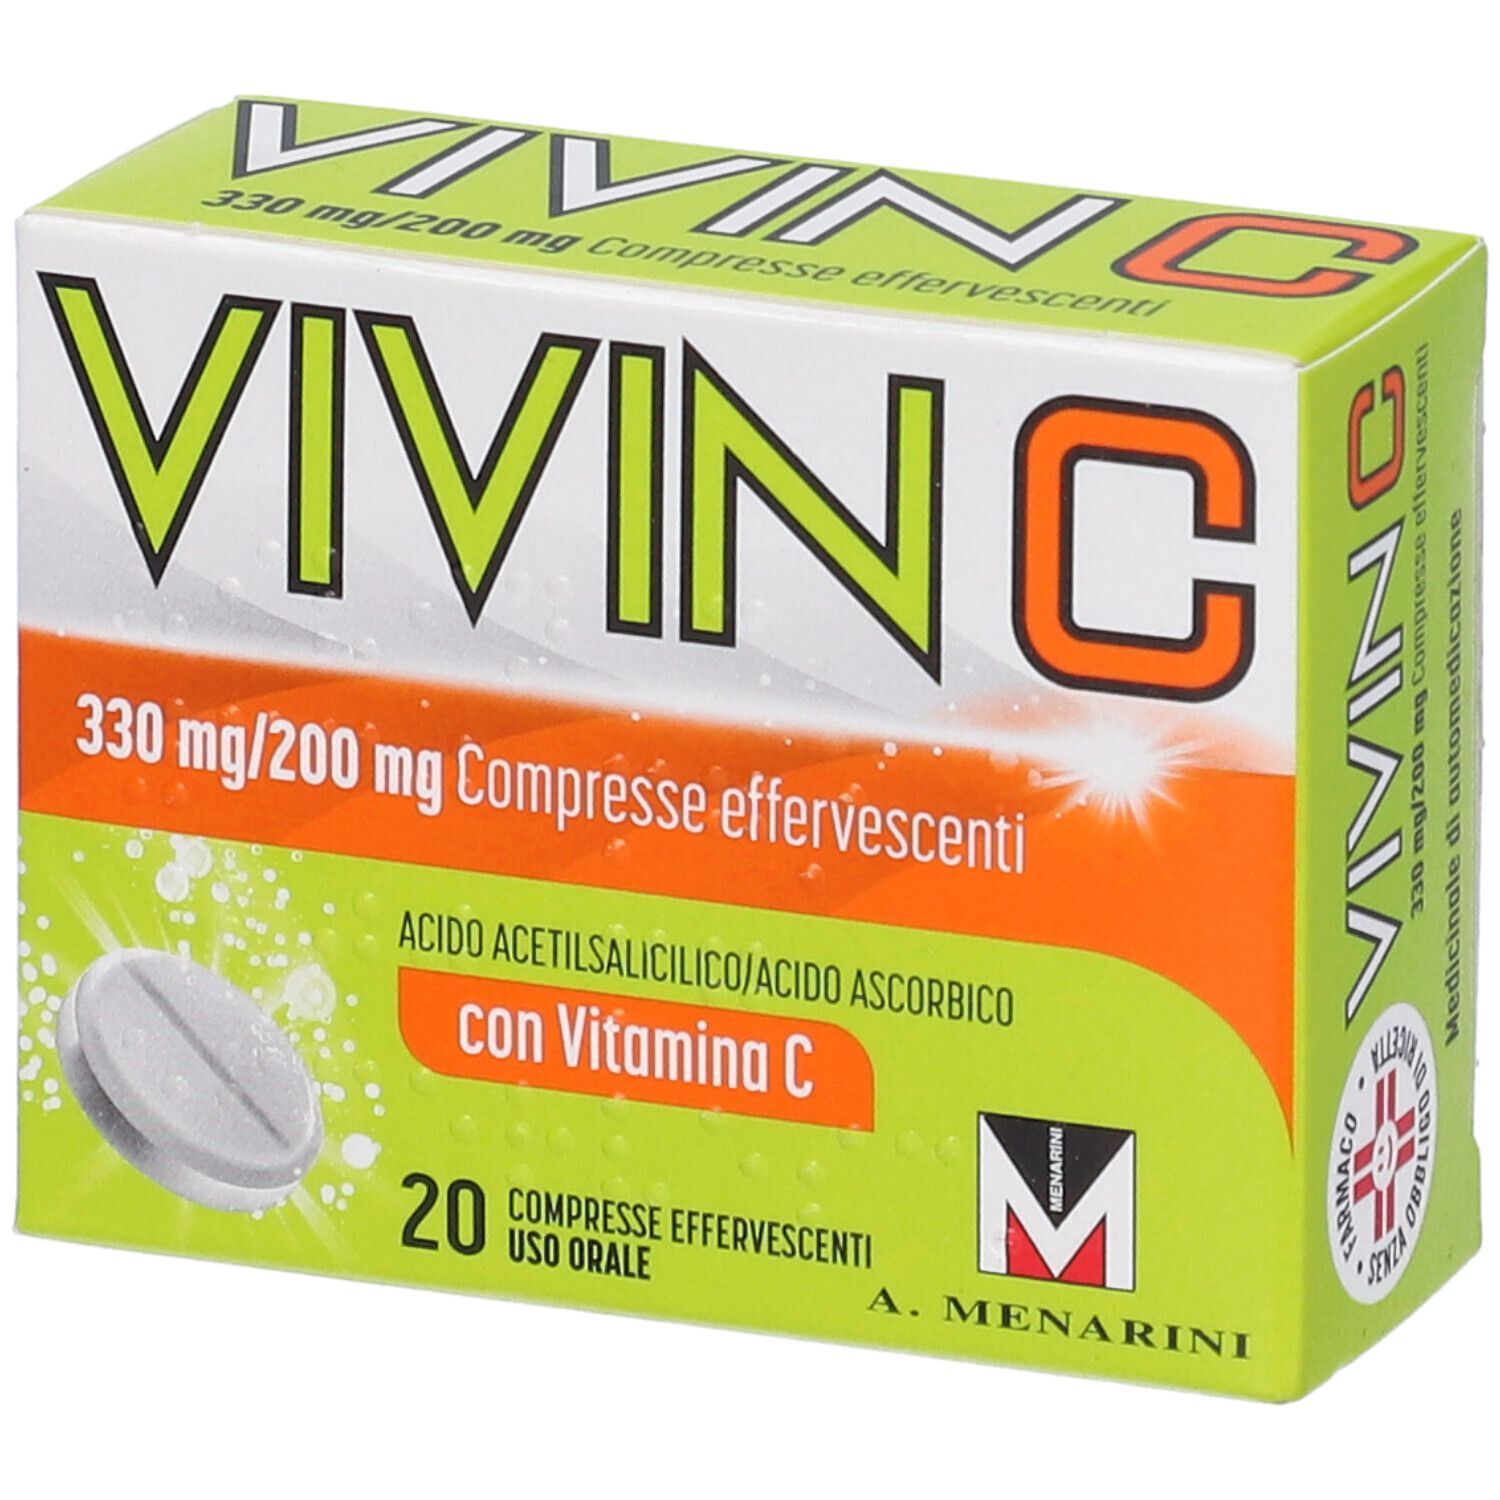 Image of Vivin C contro primi sintomi influenzali e raffreddore 20 compresse effervescenti, con Vit C